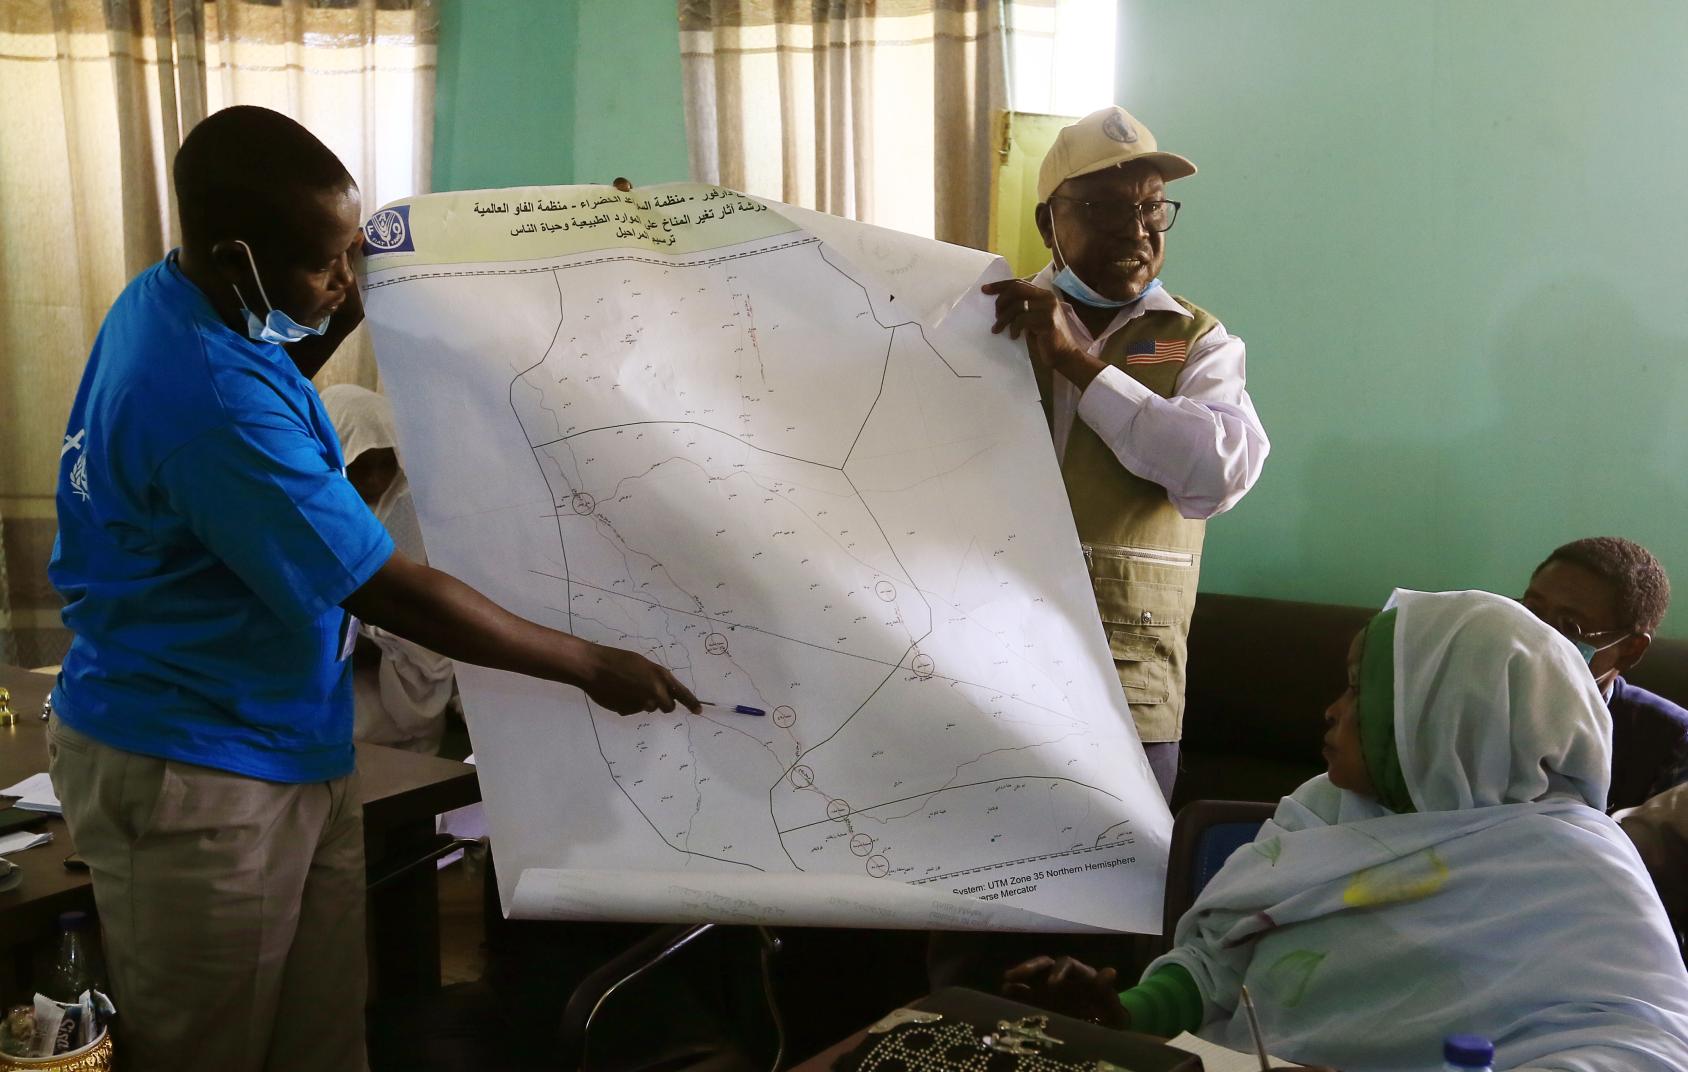 يعرض موظفان من منظمة الأغذية والزراعة طرق الهجرة وبؤر النزاع الساخنة لمجموعة من الحاضرين في قرية ياسين بشرق دارفور.